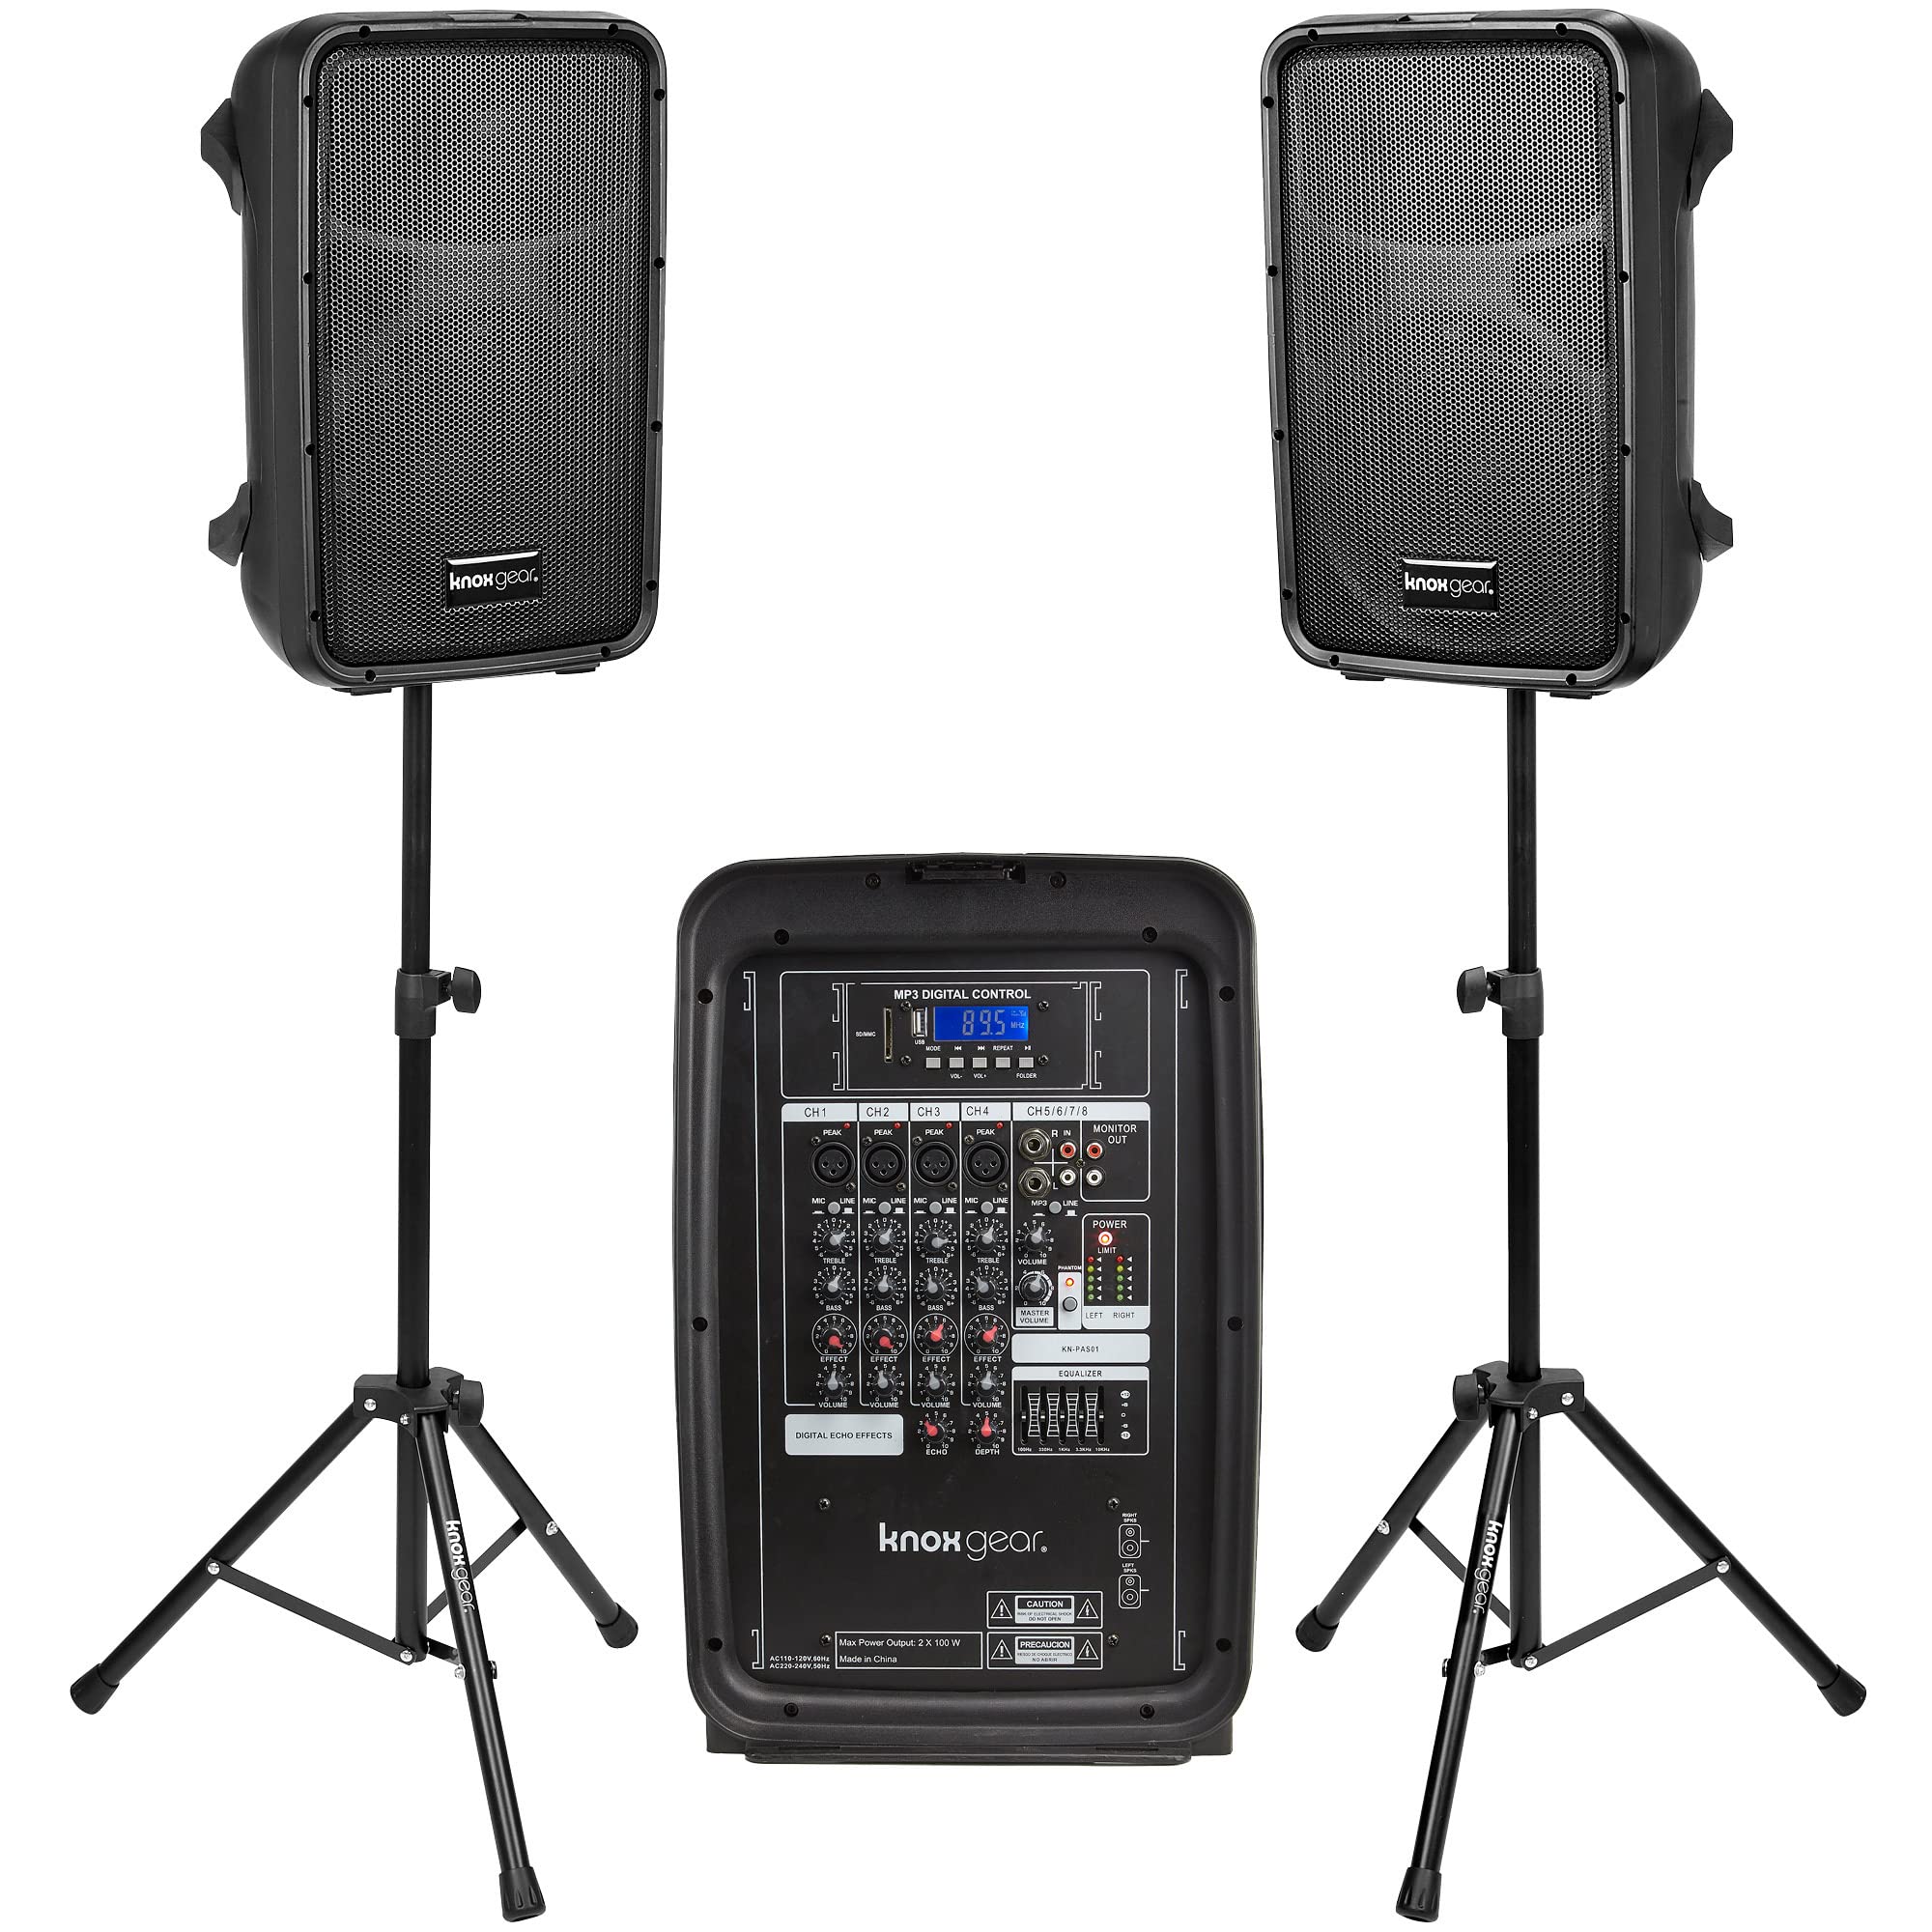  Knox Gear Knox 双扬声器和混音器套装便携式 8 300 瓦 DJ PA 系统，带有线麦克风和三脚架、8 通道放大器、蓝牙、USB、SD、1/4 线 RCA、XLR 输入，非常适合派对...